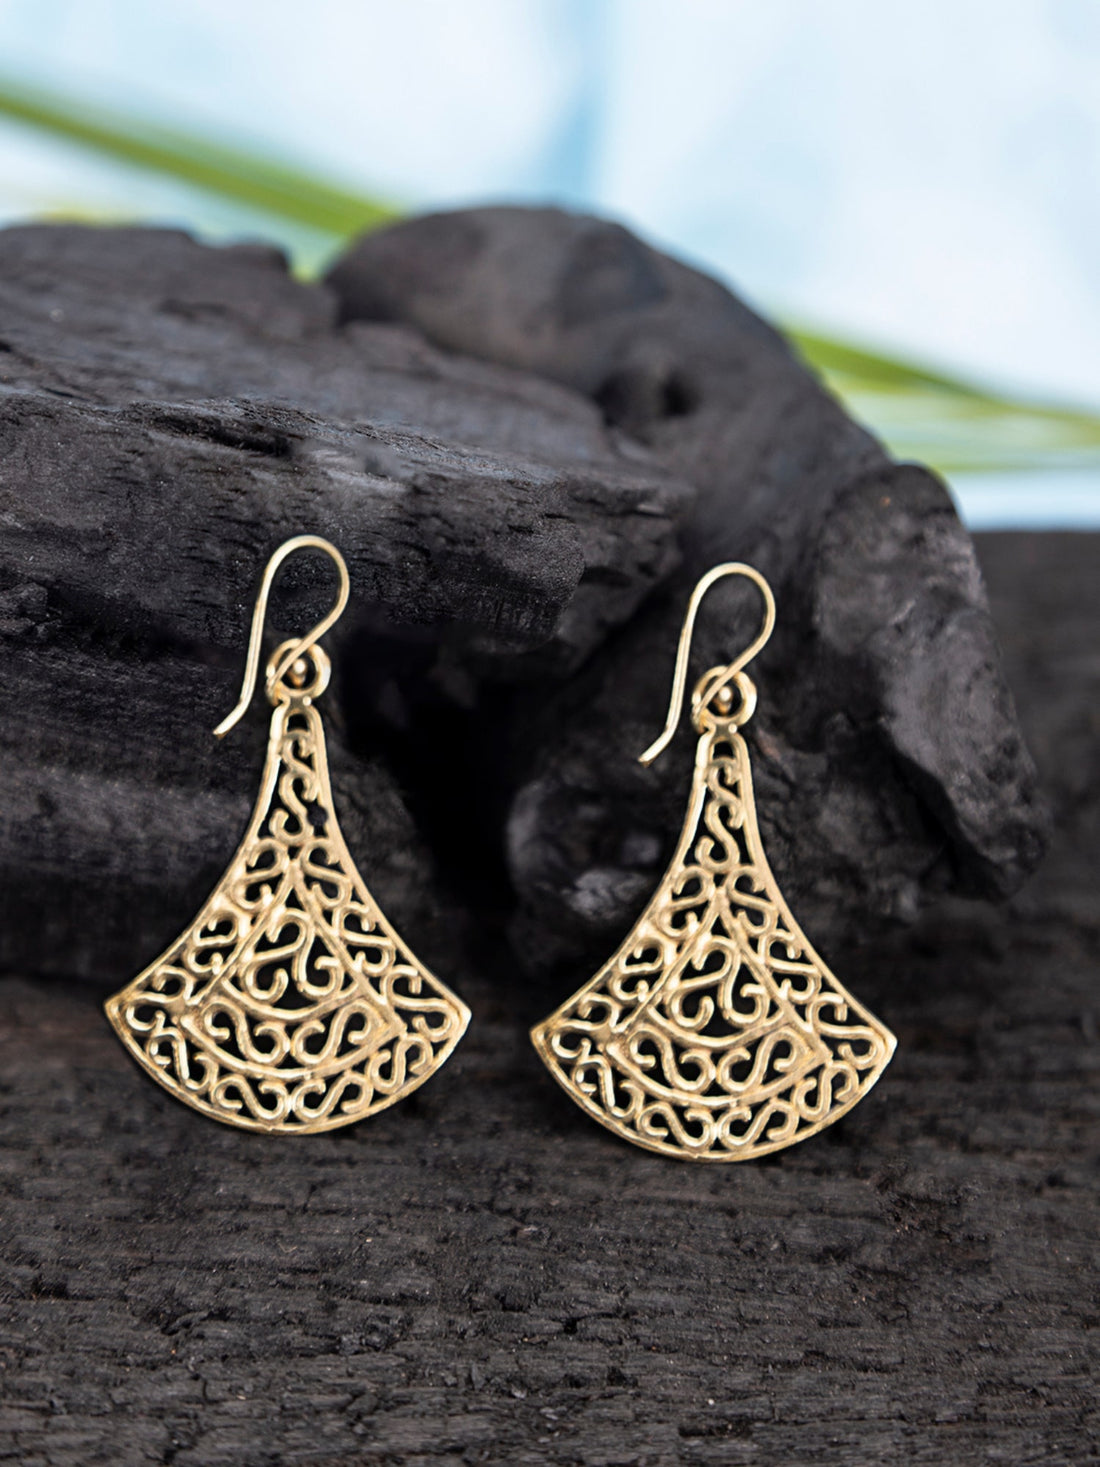 Daily Wear Drops & Danglers Earrings - Ethnic Elegance Gold-Plated Brass Earrings By Studio One Love